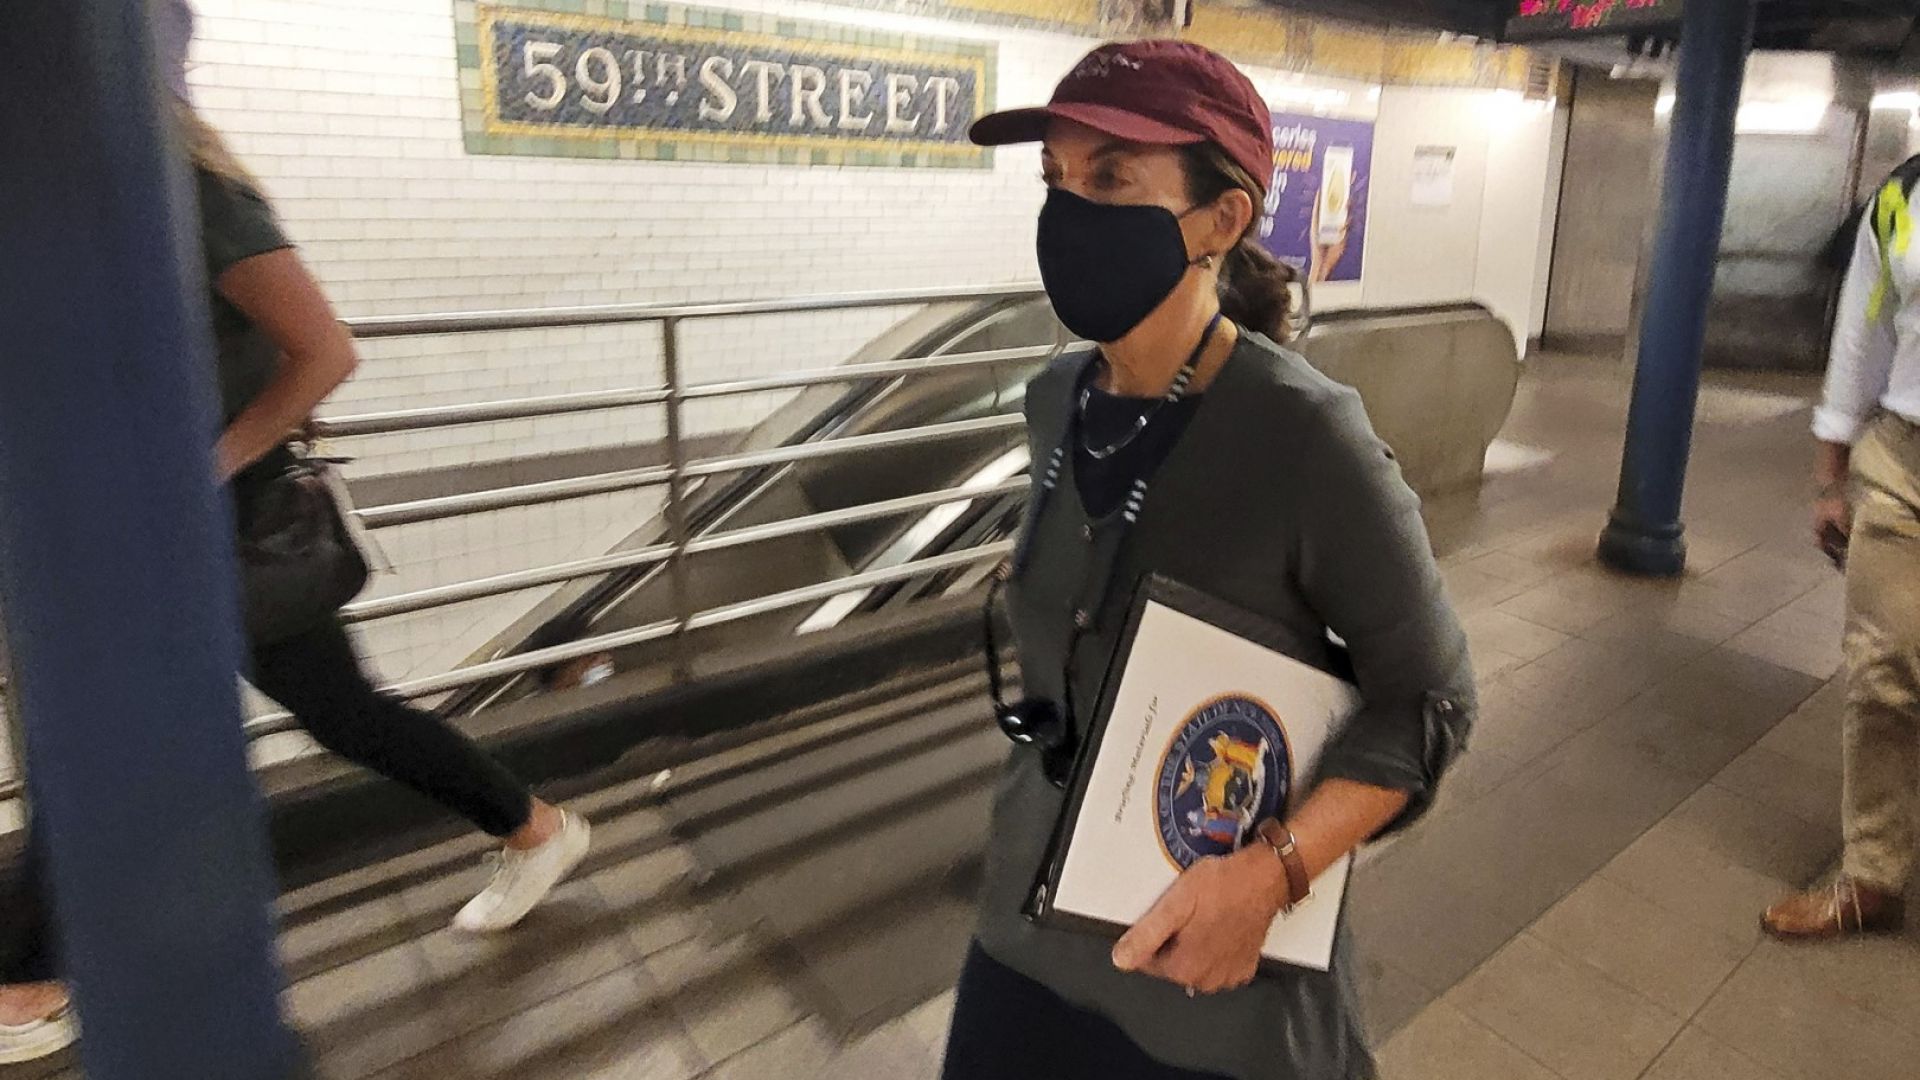  Тази фотография, предоставена от Службата на губернатора, демонстрира Кейти Хокул, до момента в който минава през станция на метрото, в Ню Йорк, сряда, 4 август 2021 година 